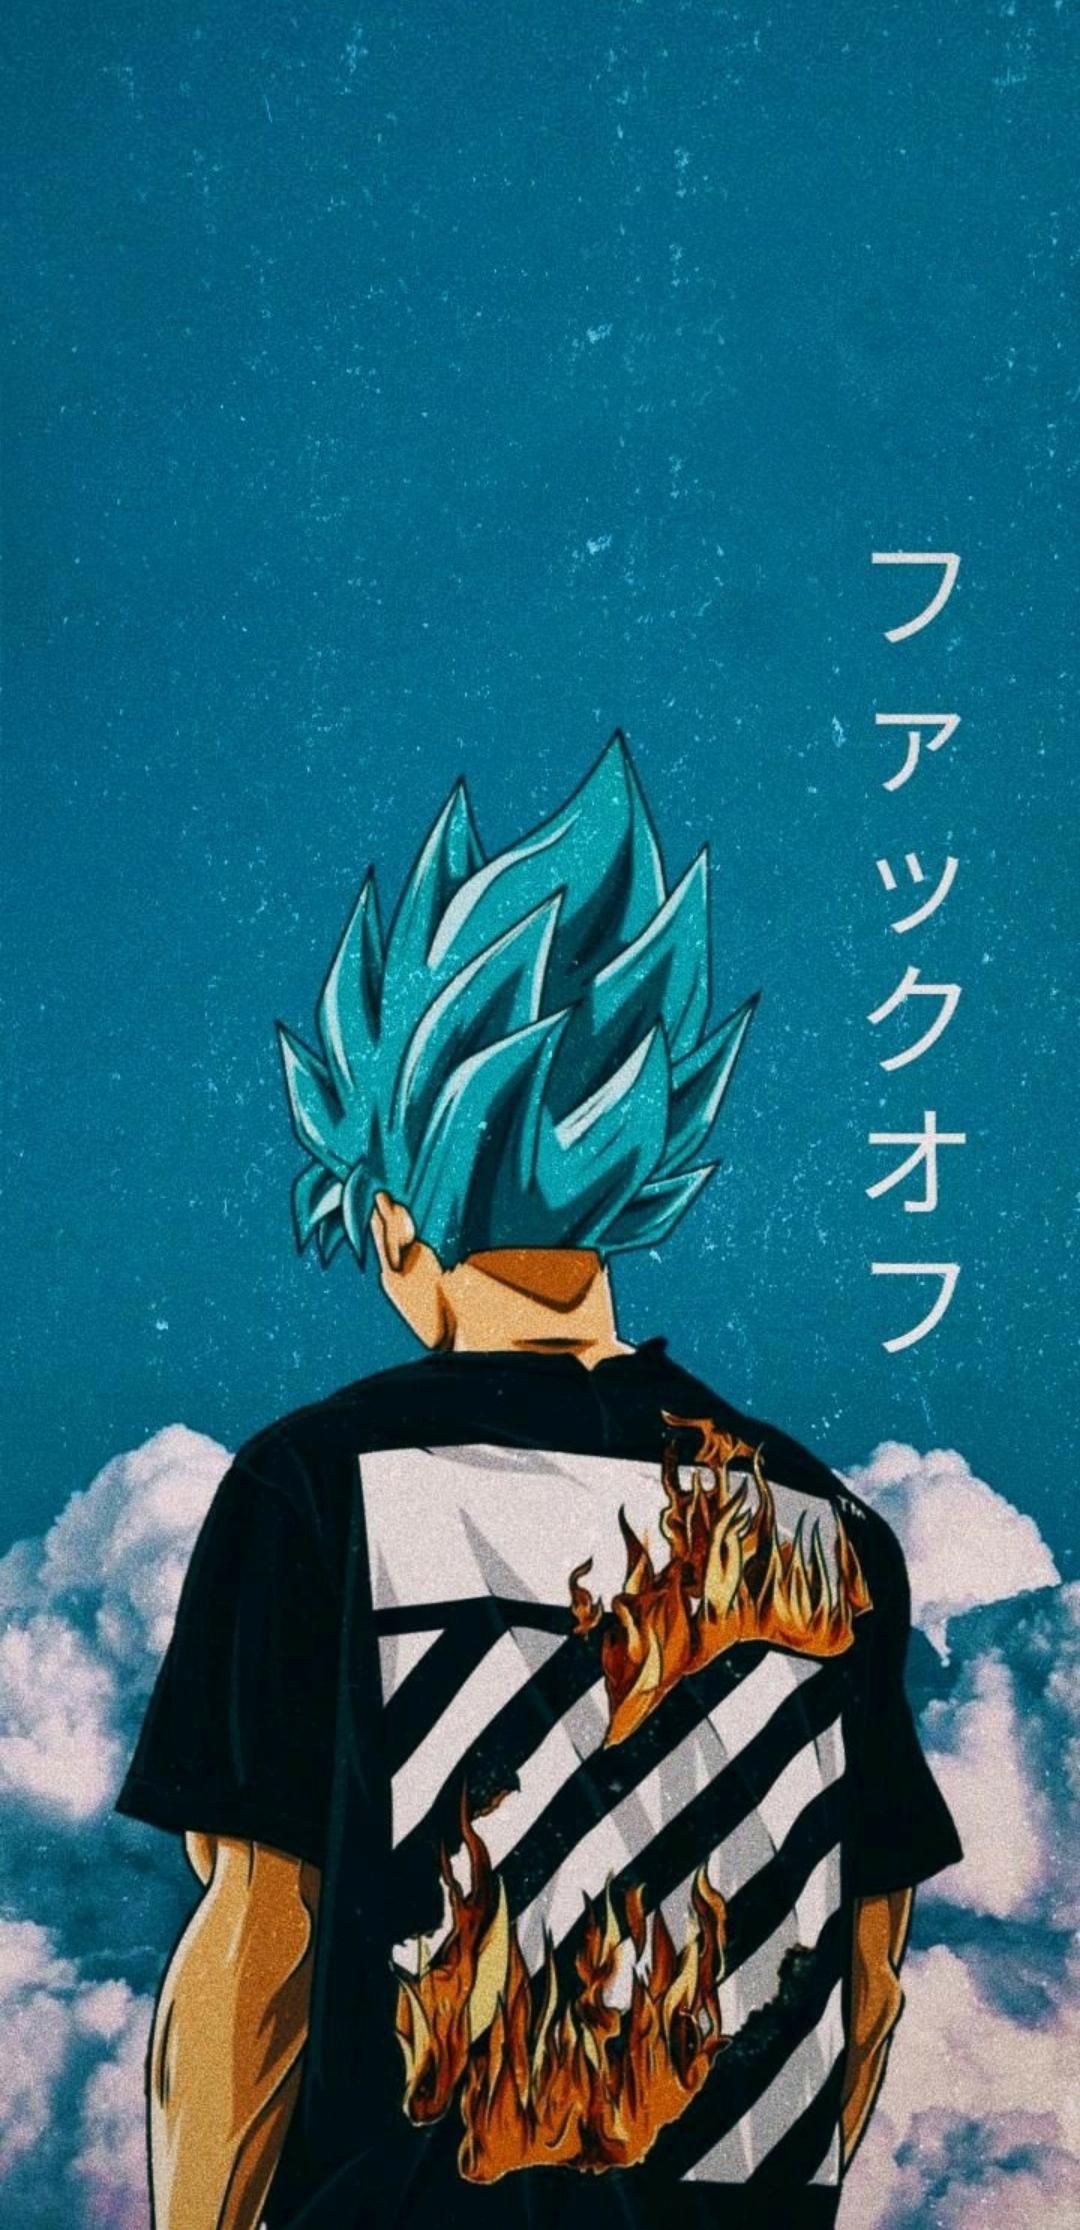 Goku, aesthetic